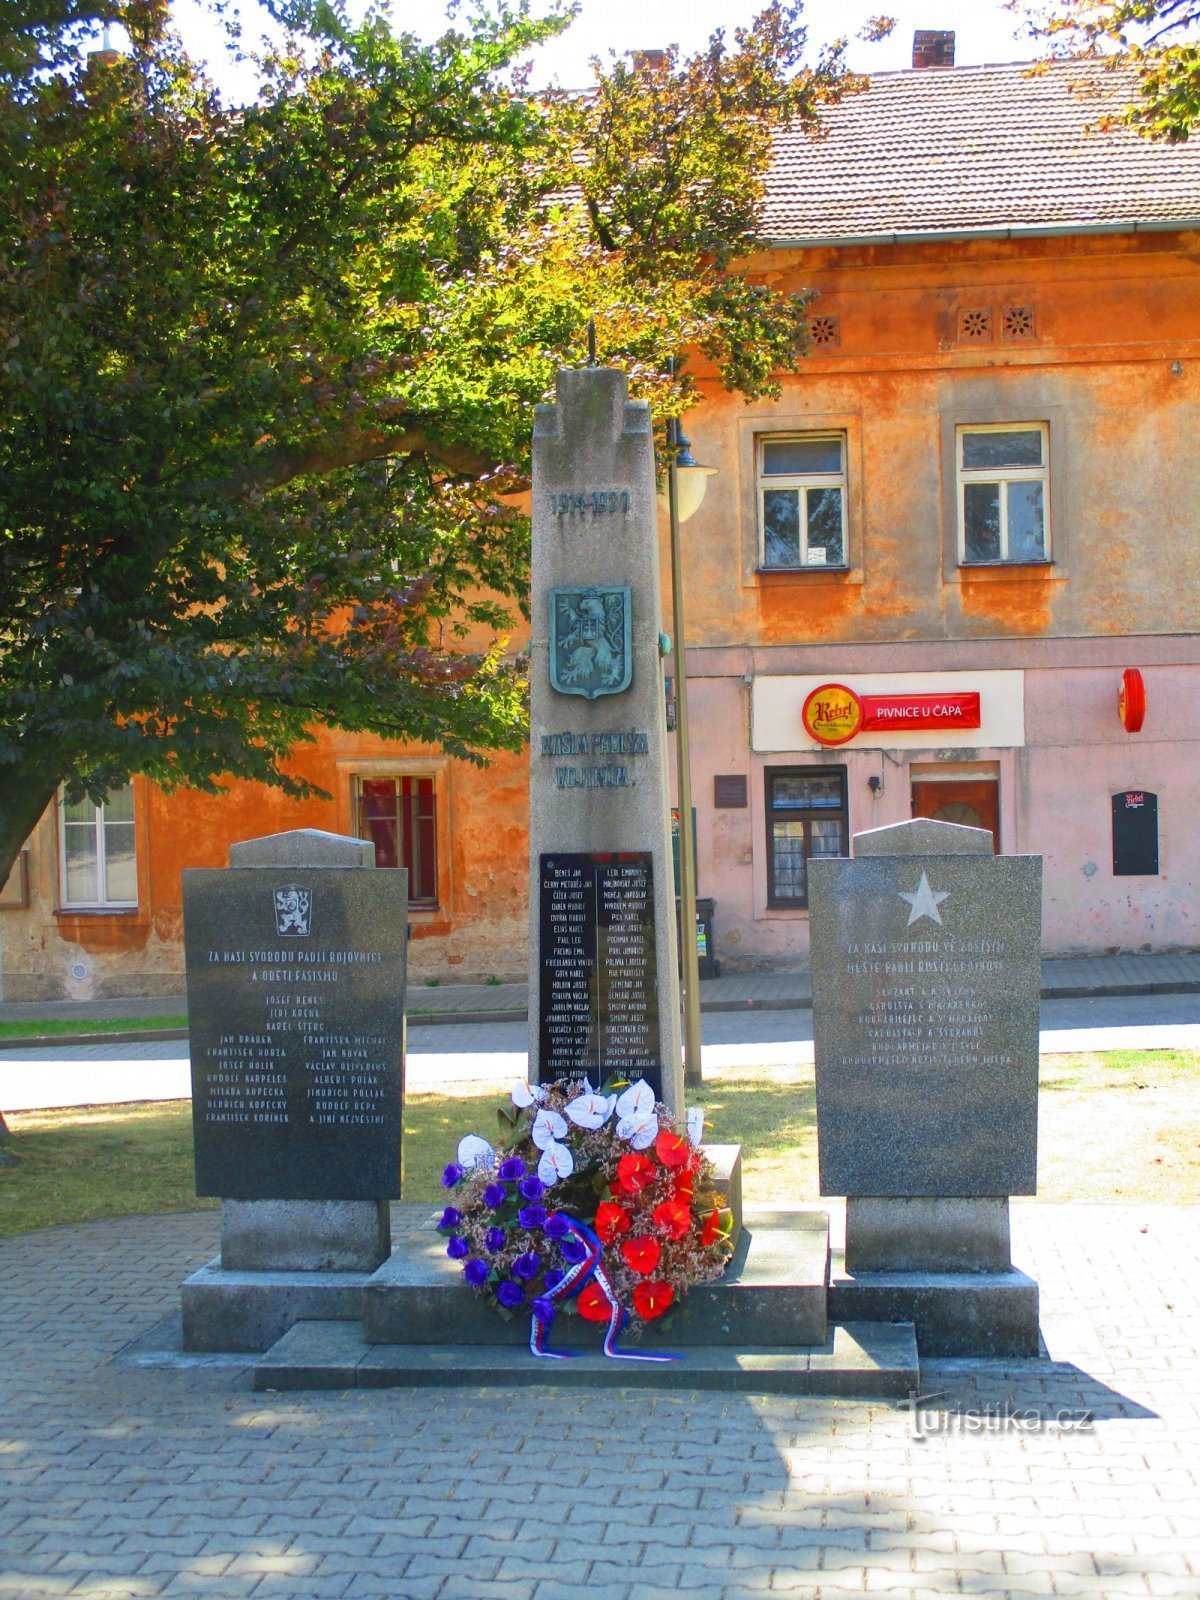 Đài tưởng niệm các nạn nhân của cả hai cuộc chiến tranh - Golčův Jeníkov